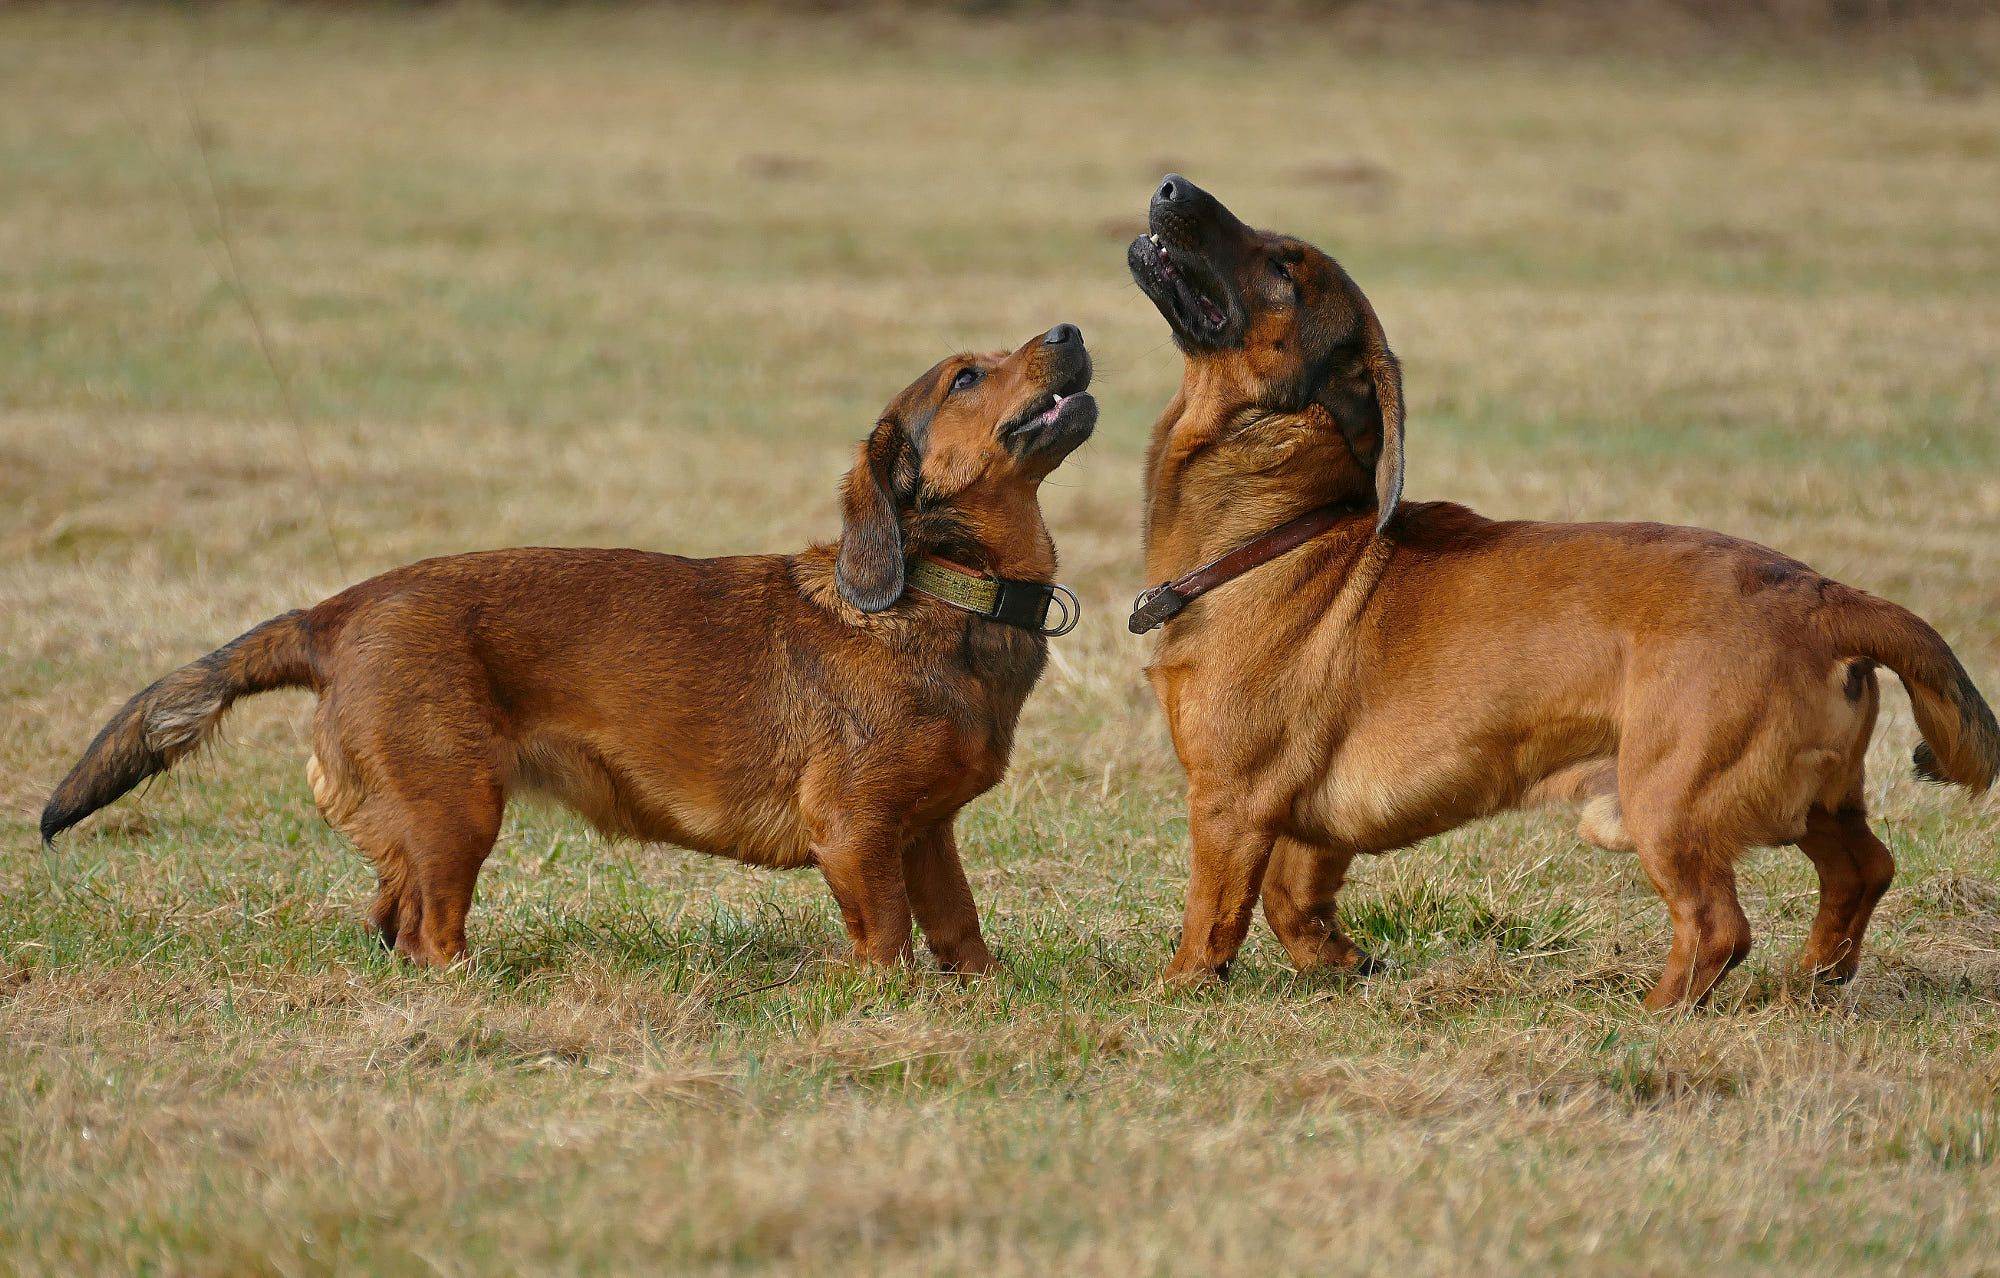 Альпийская таксообразная гончая: описание породы, фото собак